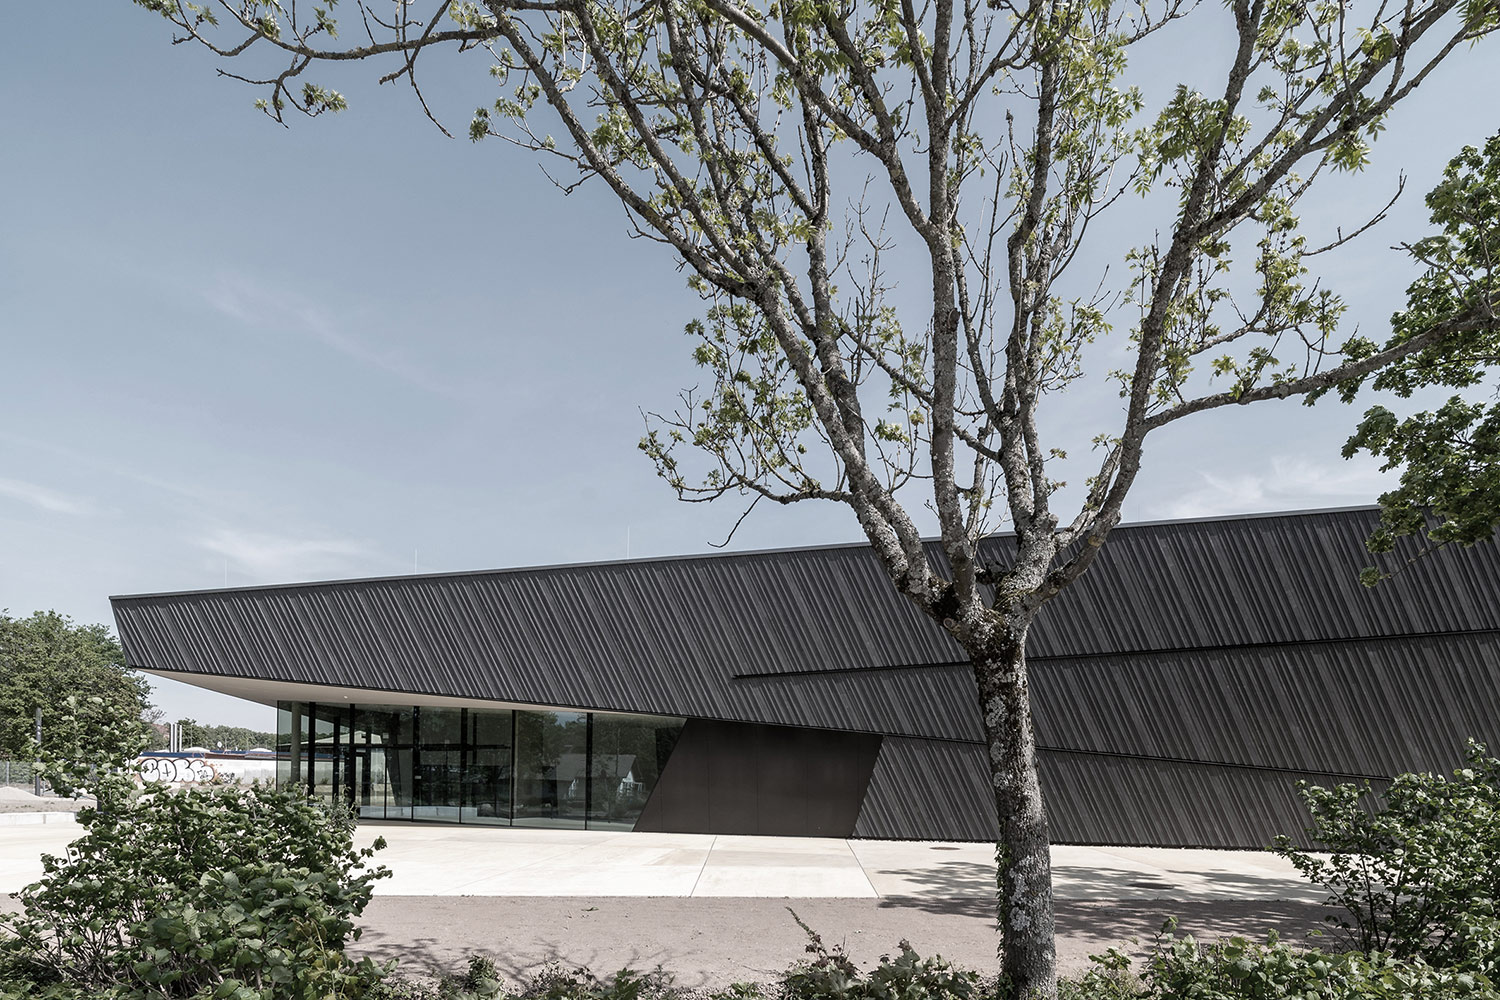 Neubau Veranstaltungshalle Kuppenheim ausgezeichnet für beispielhaftes Bauen 2021, Außenansicht